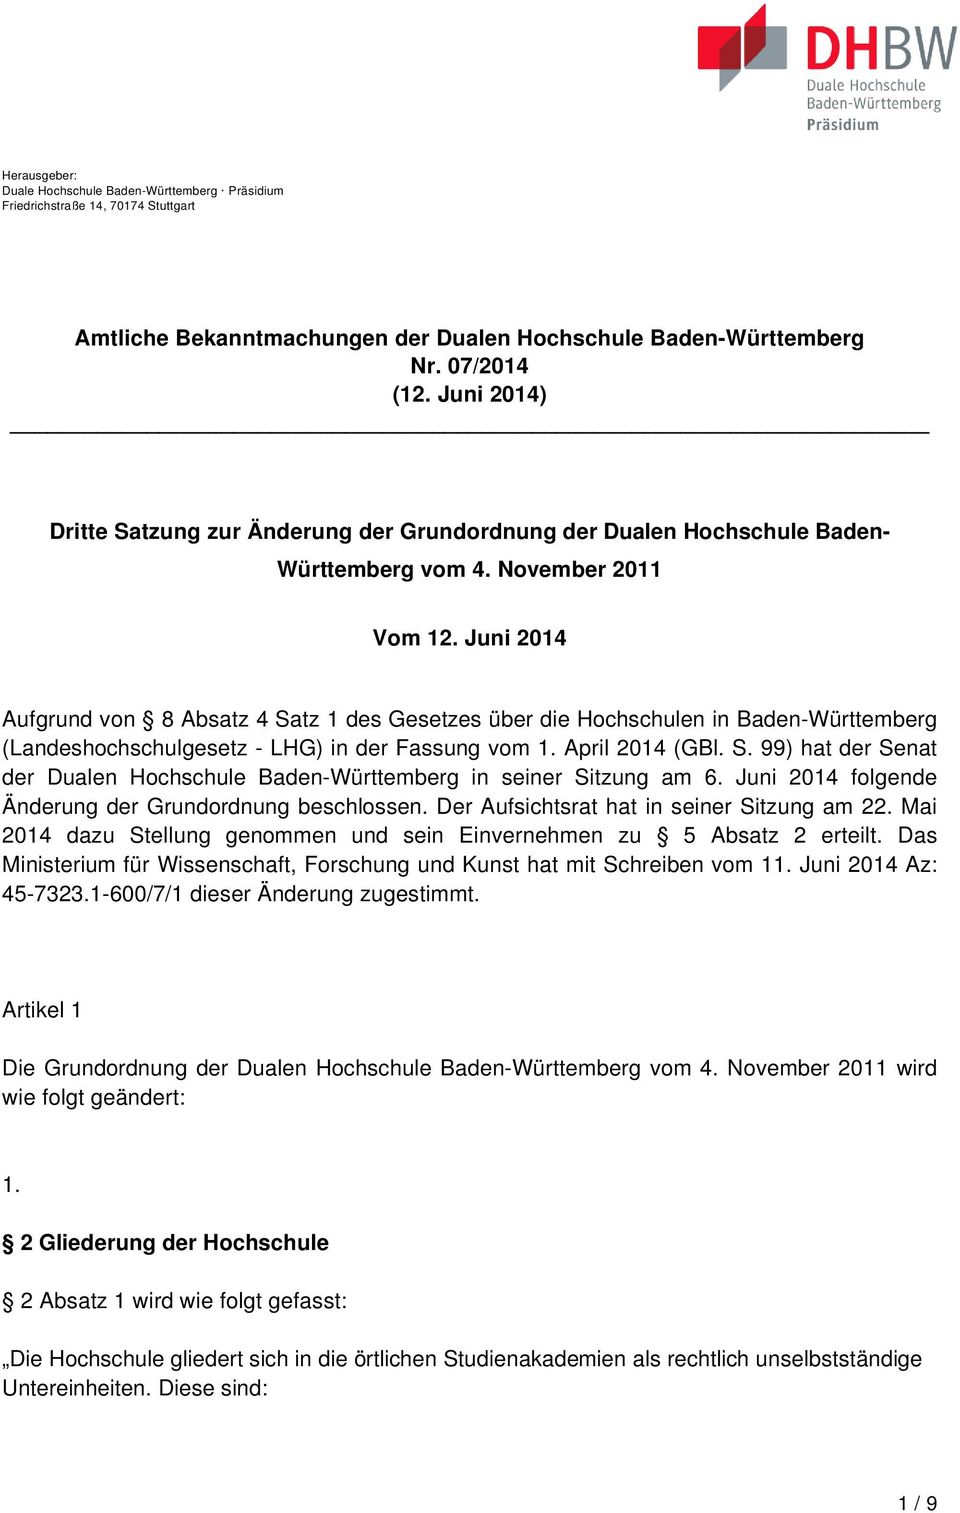 Juni 2014 Aufgrund von 8 Absatz 4 Satz 1 des Gesetzes über die Hochschulen in Baden-Württemberg (Landeshochschulgesetz - LHG) in der Fassung vom 1. April 2014 (GBl. S. 99) hat der Senat der Dualen Hochschule Baden-Württemberg in seiner Sitzung am 6.